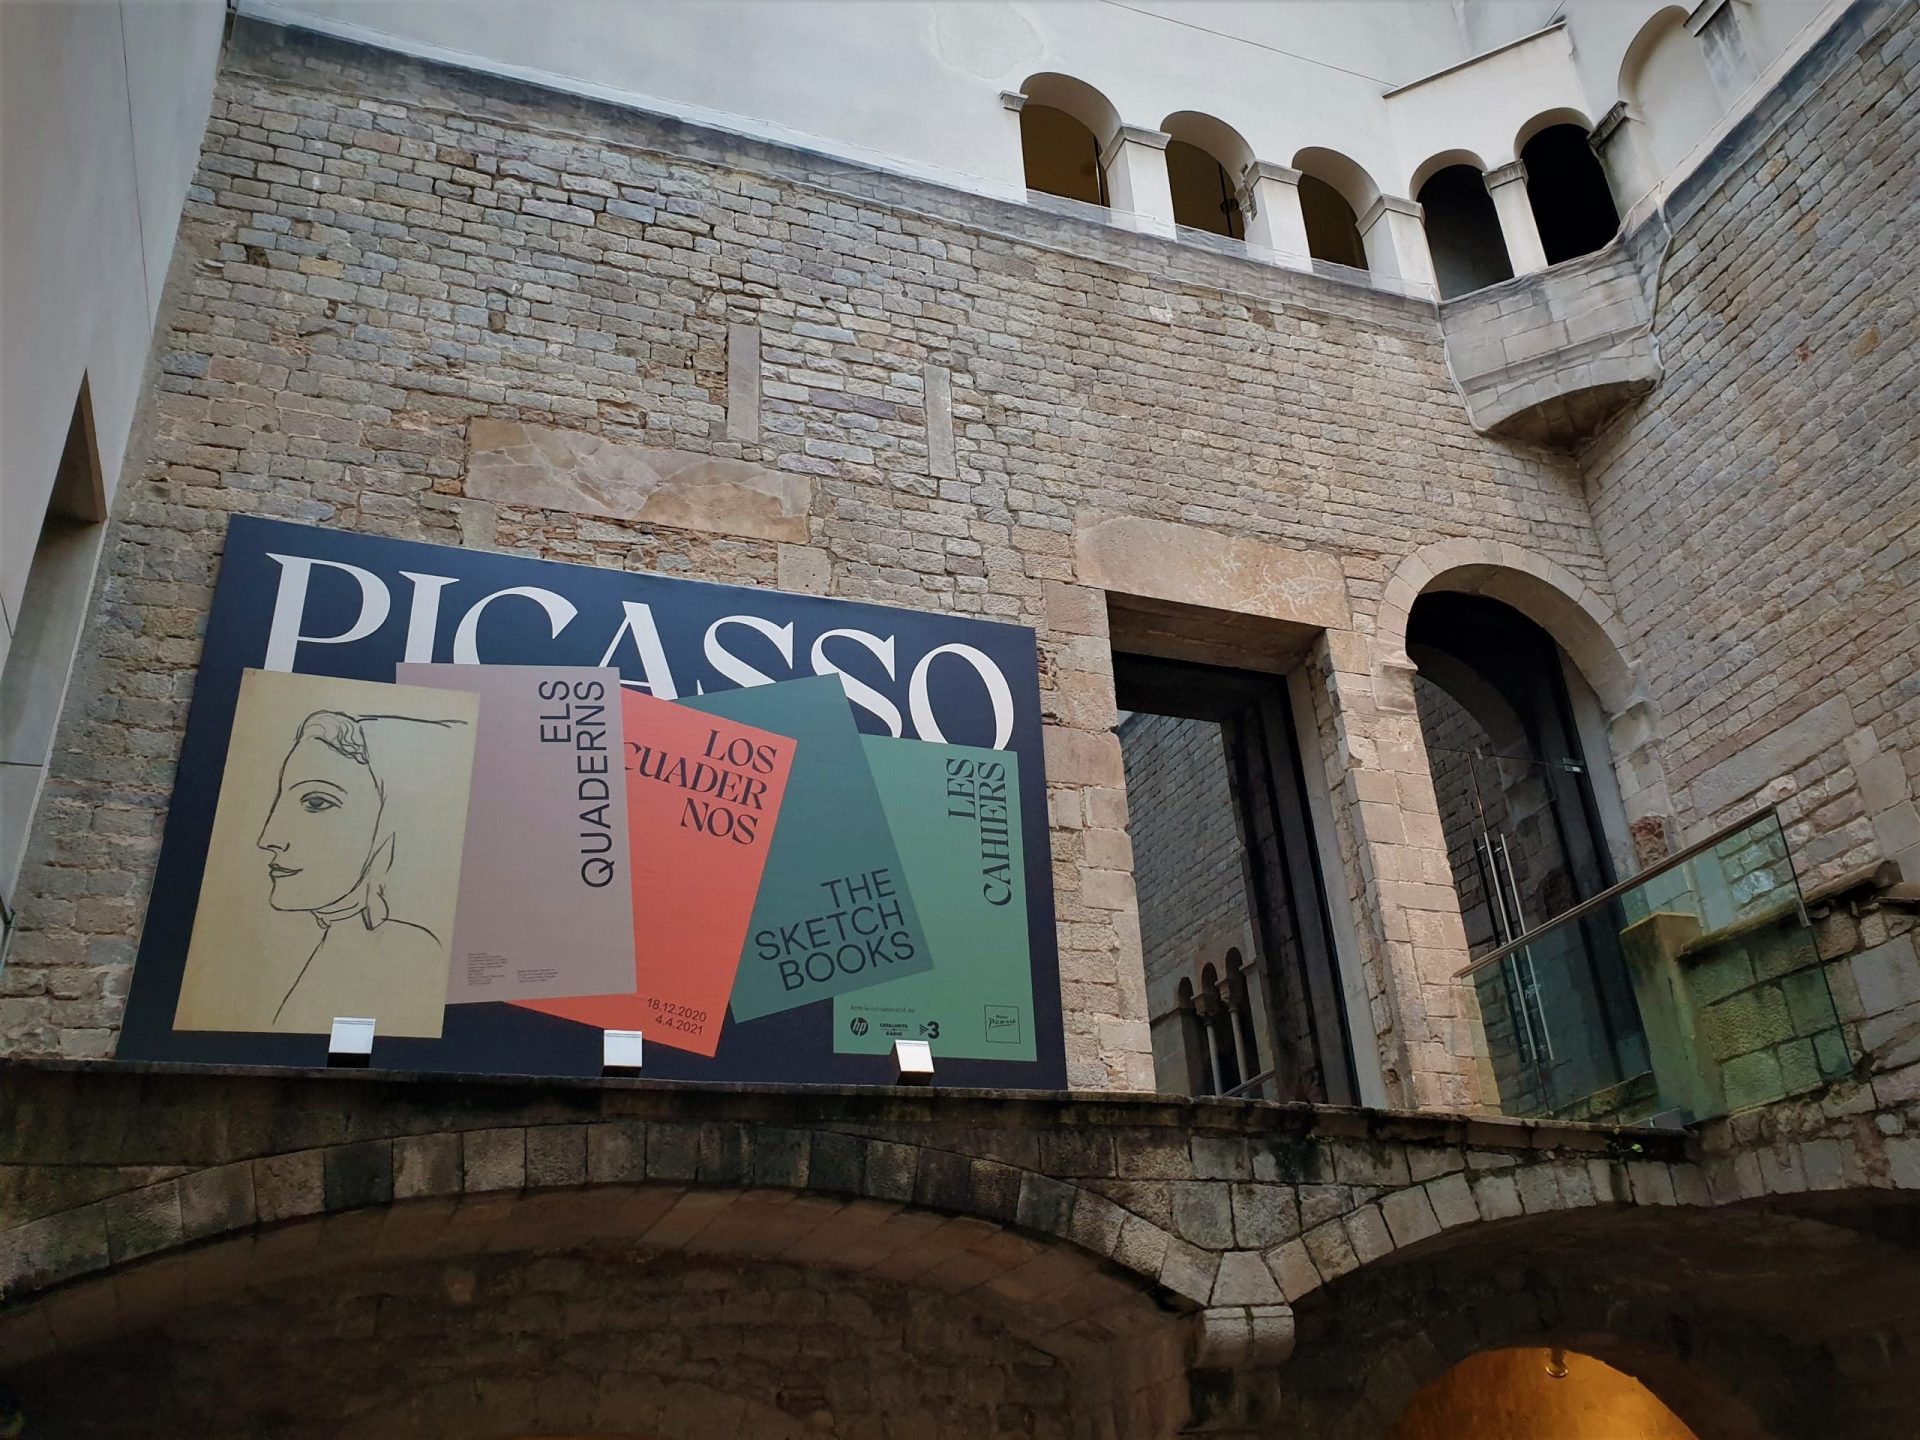 Museo Picasso de barcelona, entrada a la exposición temporal.